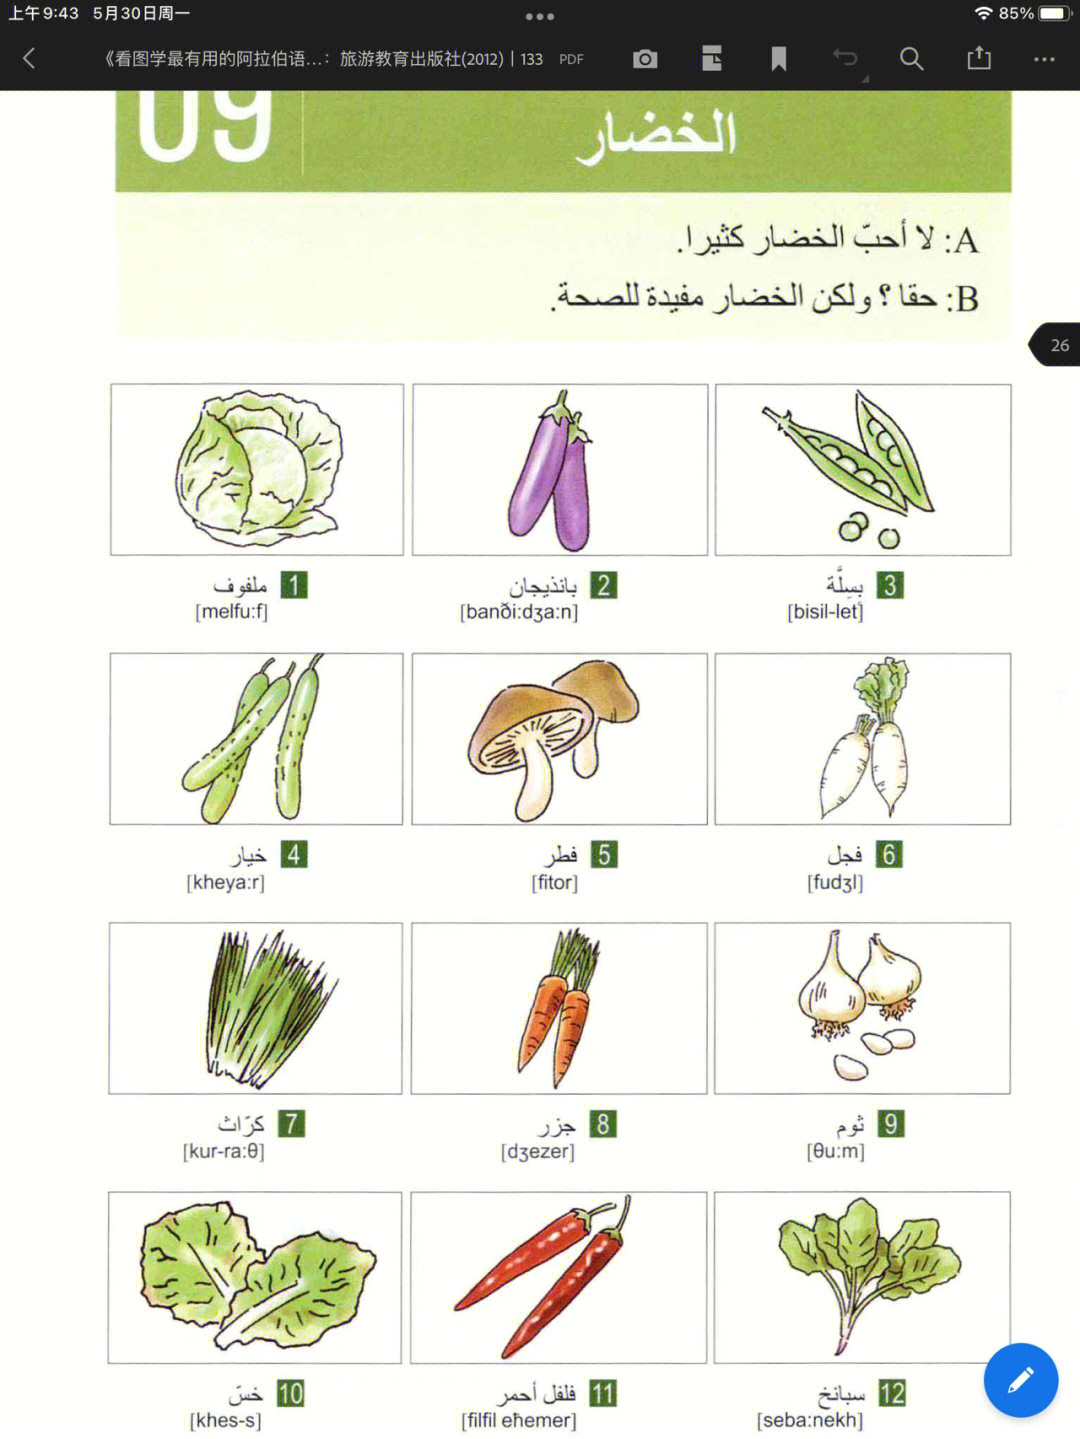 阿拉伯文拼读图片